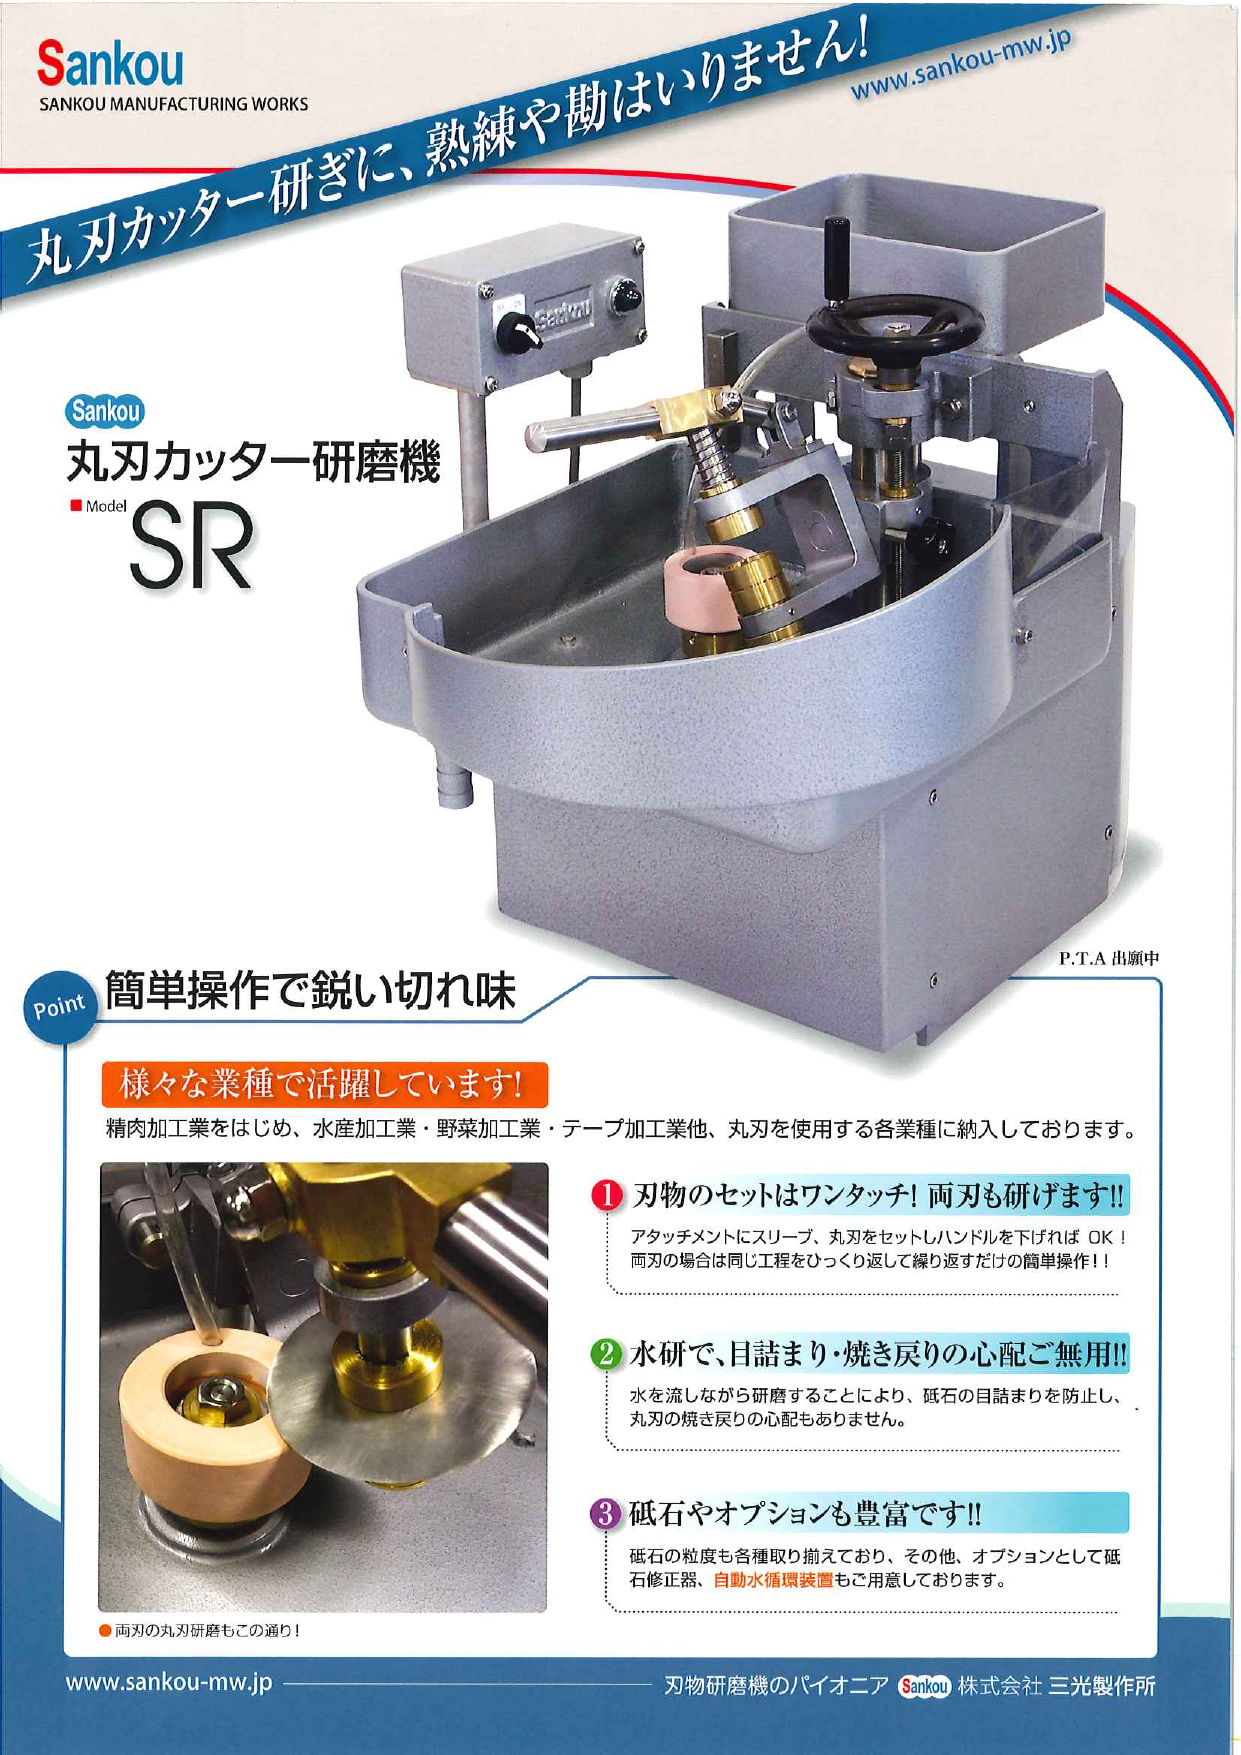 丸刃カッター研磨機 Model SR（株式会社三光製作所）のカタログ無料